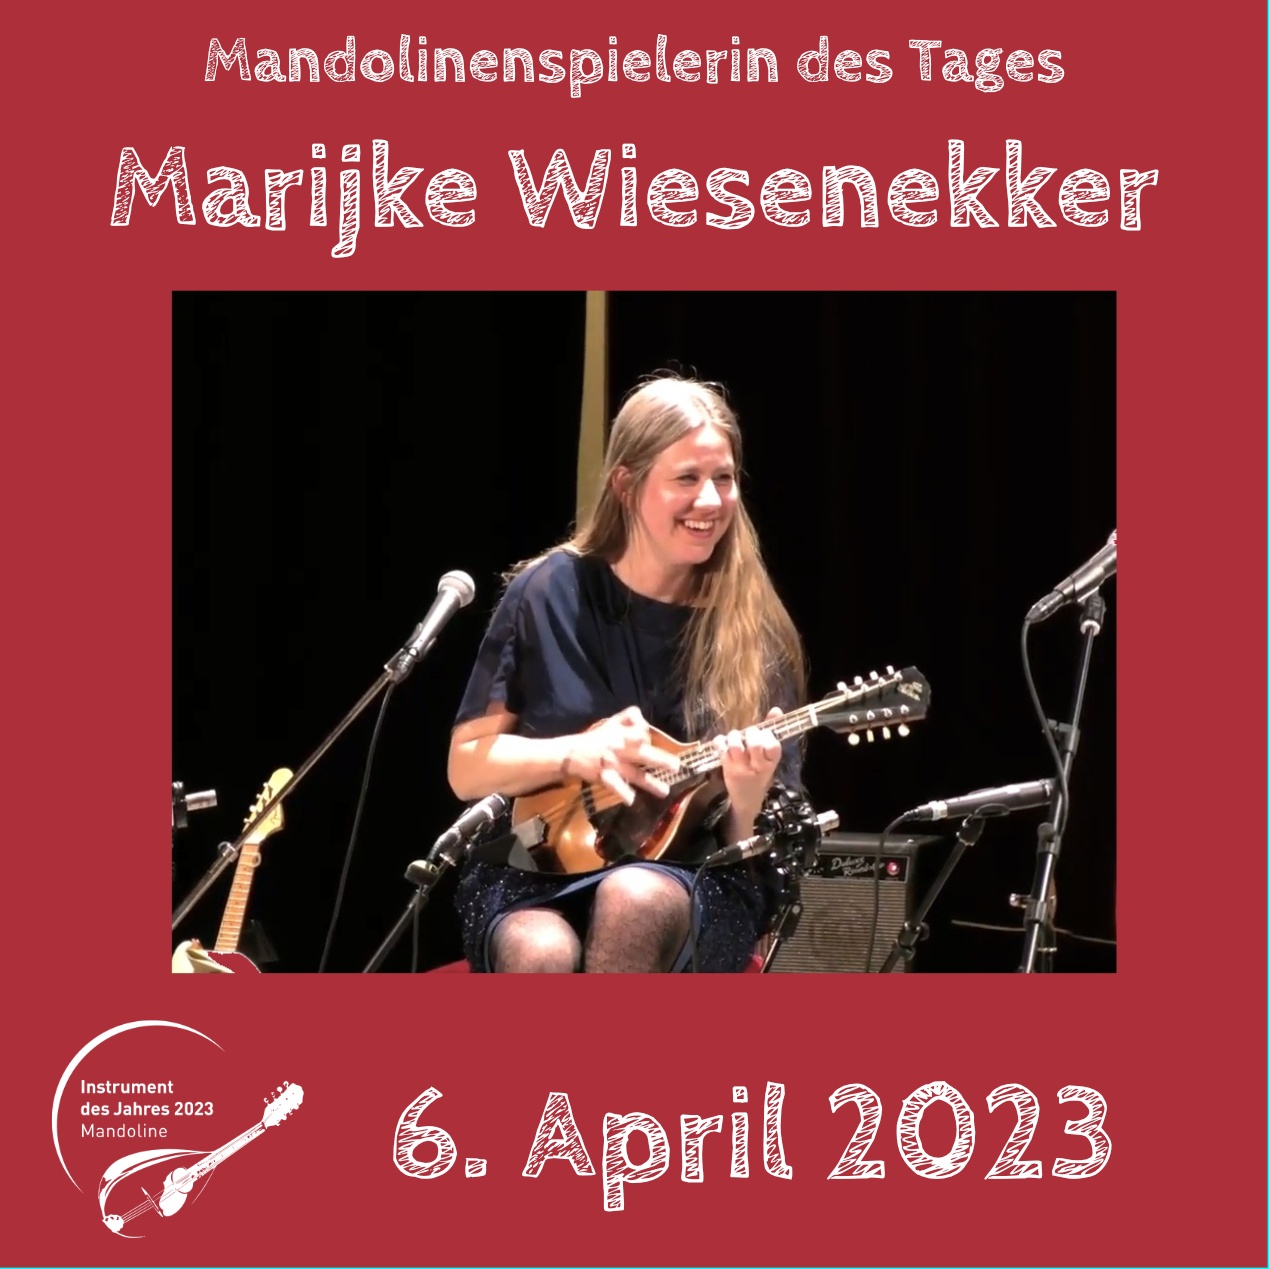 Marijke Wiesenekker Instrument des Jahres 2023 Mandolinenspieler des Tages